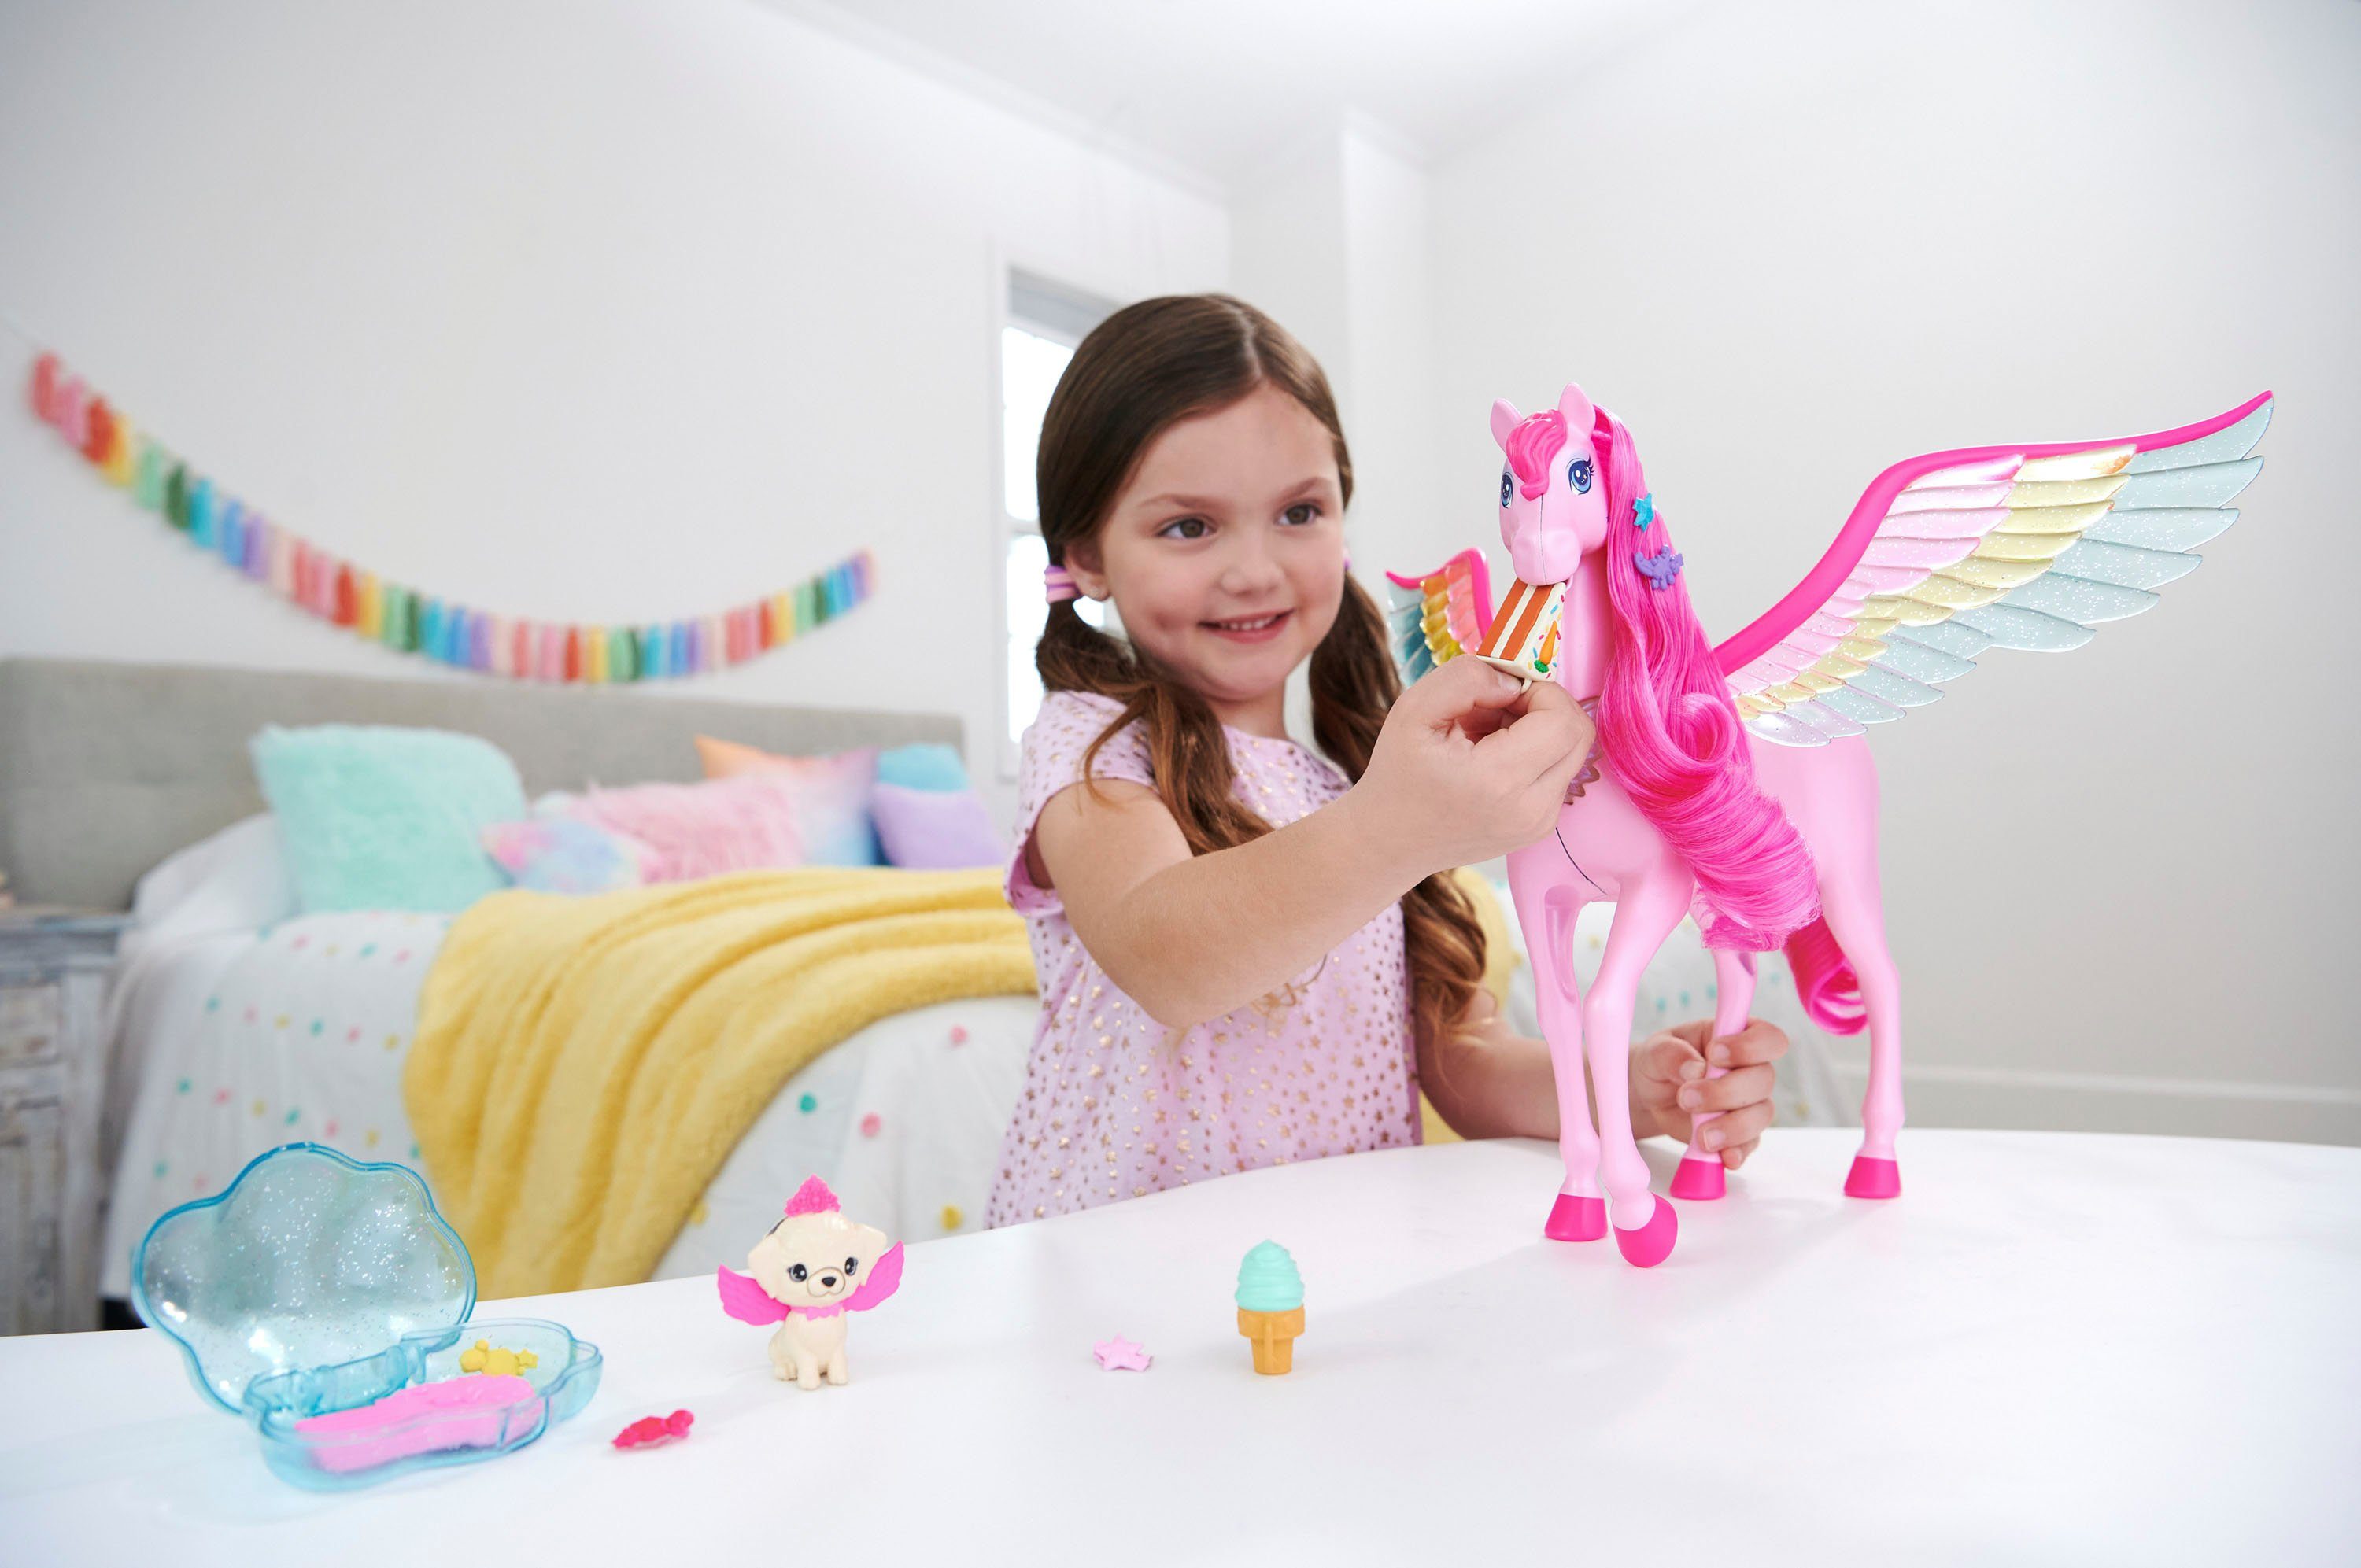 Barbie Anziehpuppe Ein verborgener Zauber, mit Rosafarbener Pegasus Hündchen